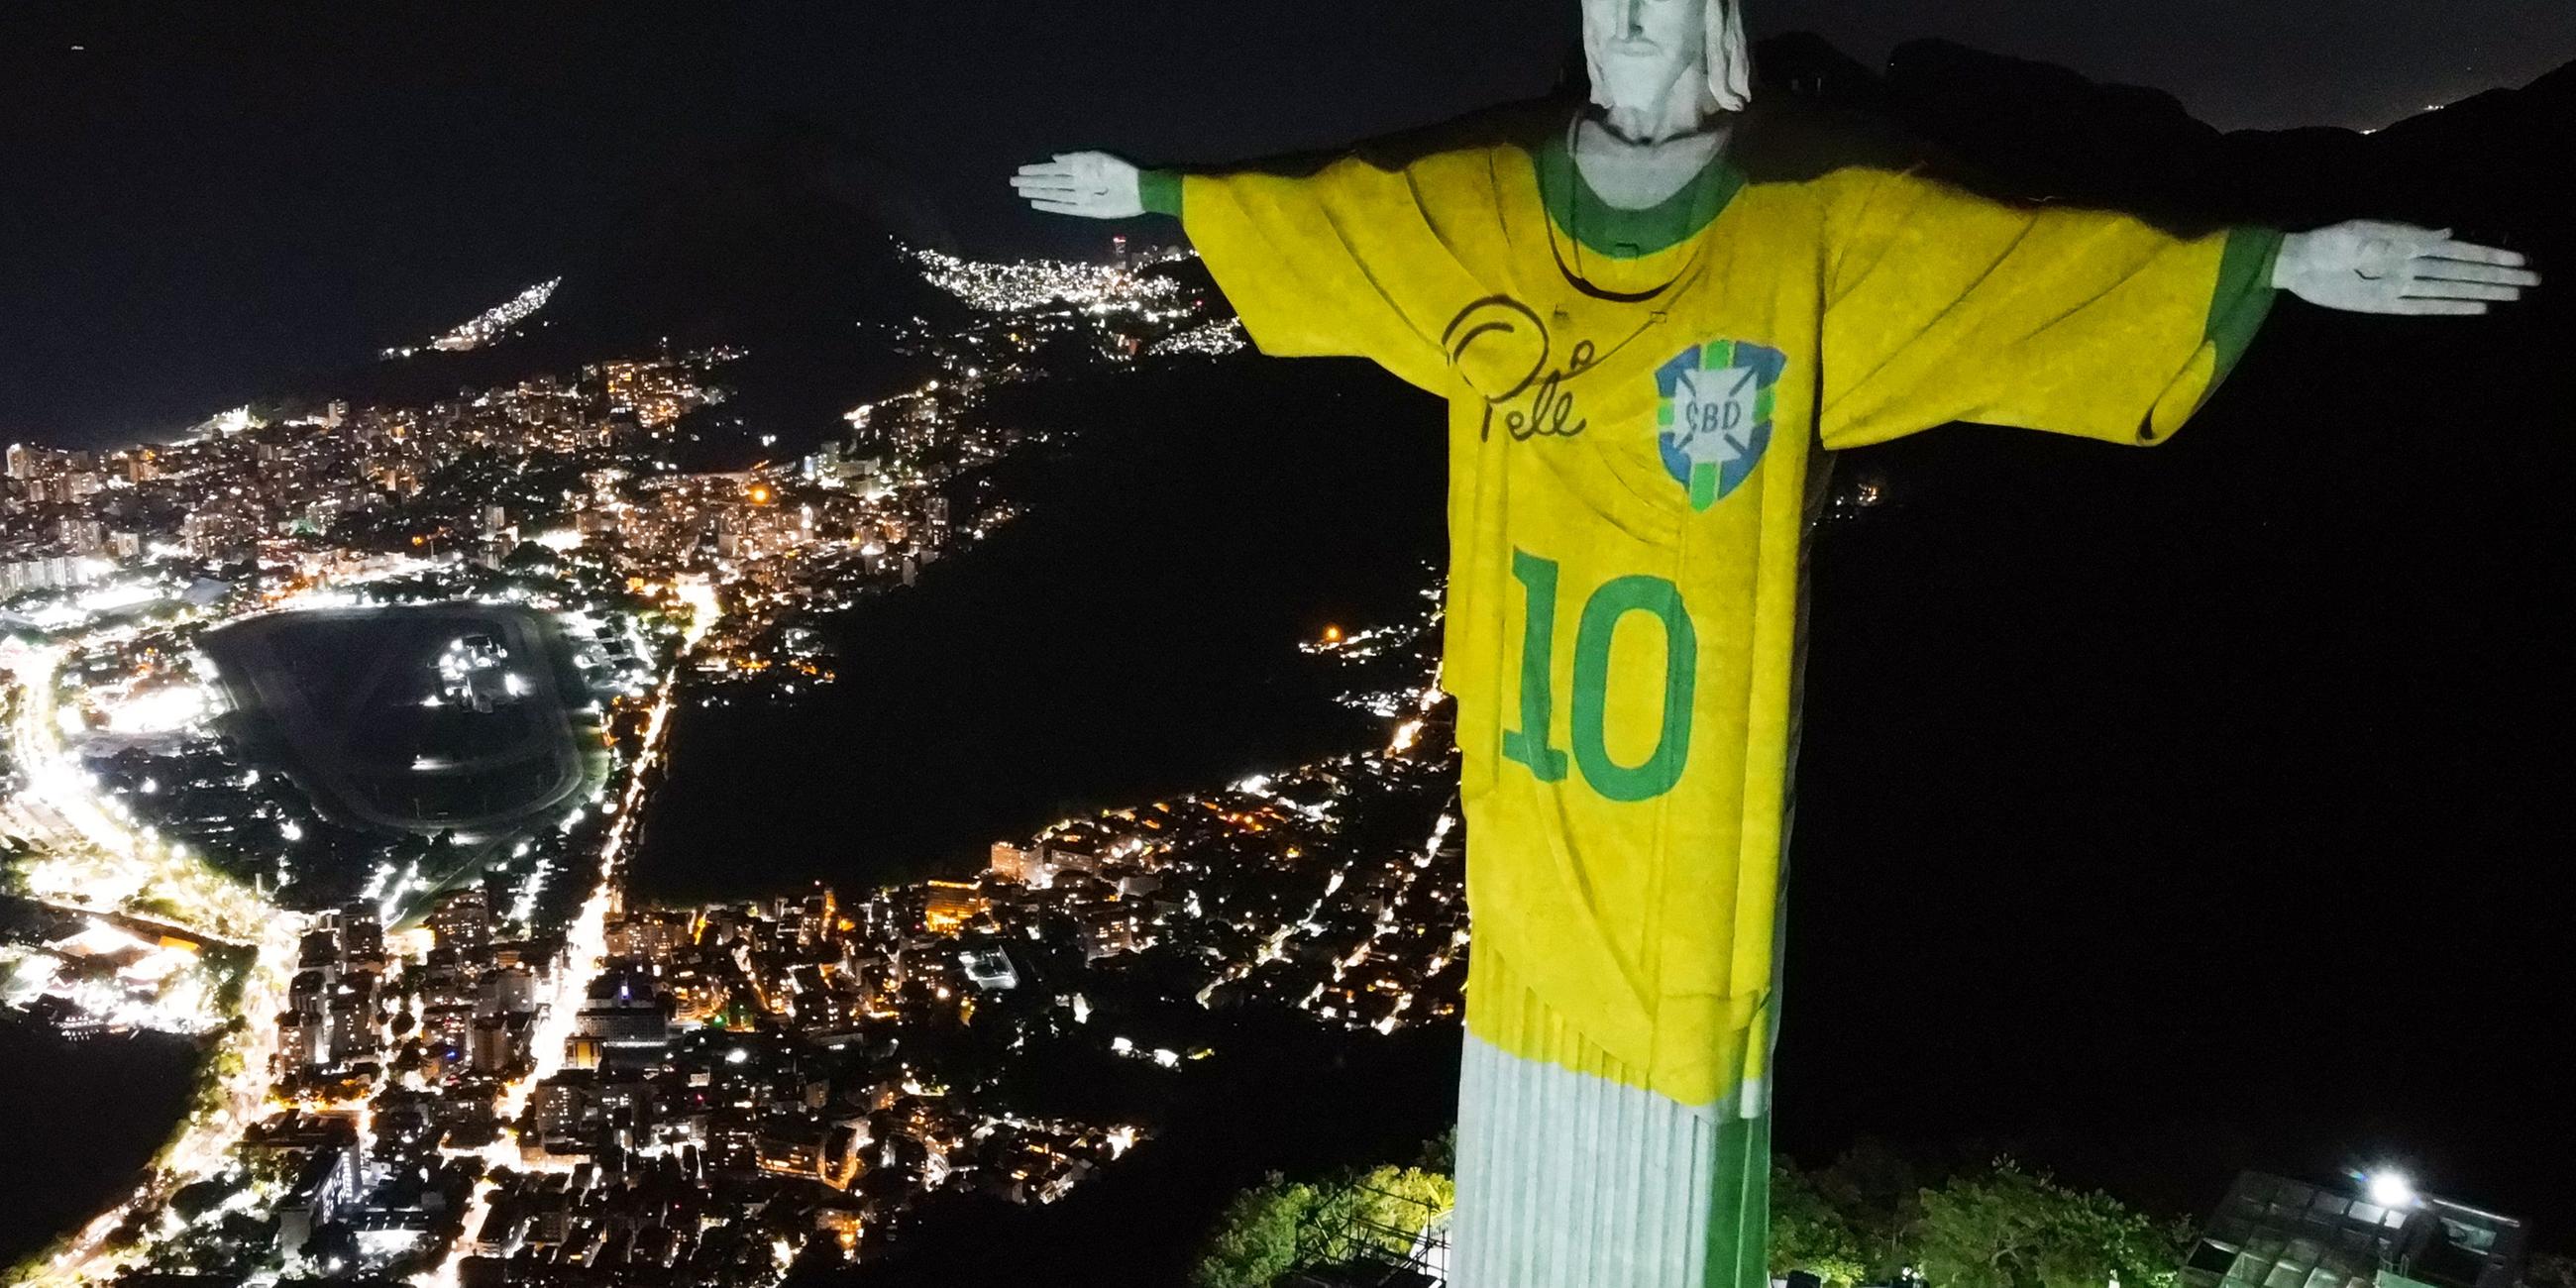 Christusstatue in Rio im Pele-Trikot